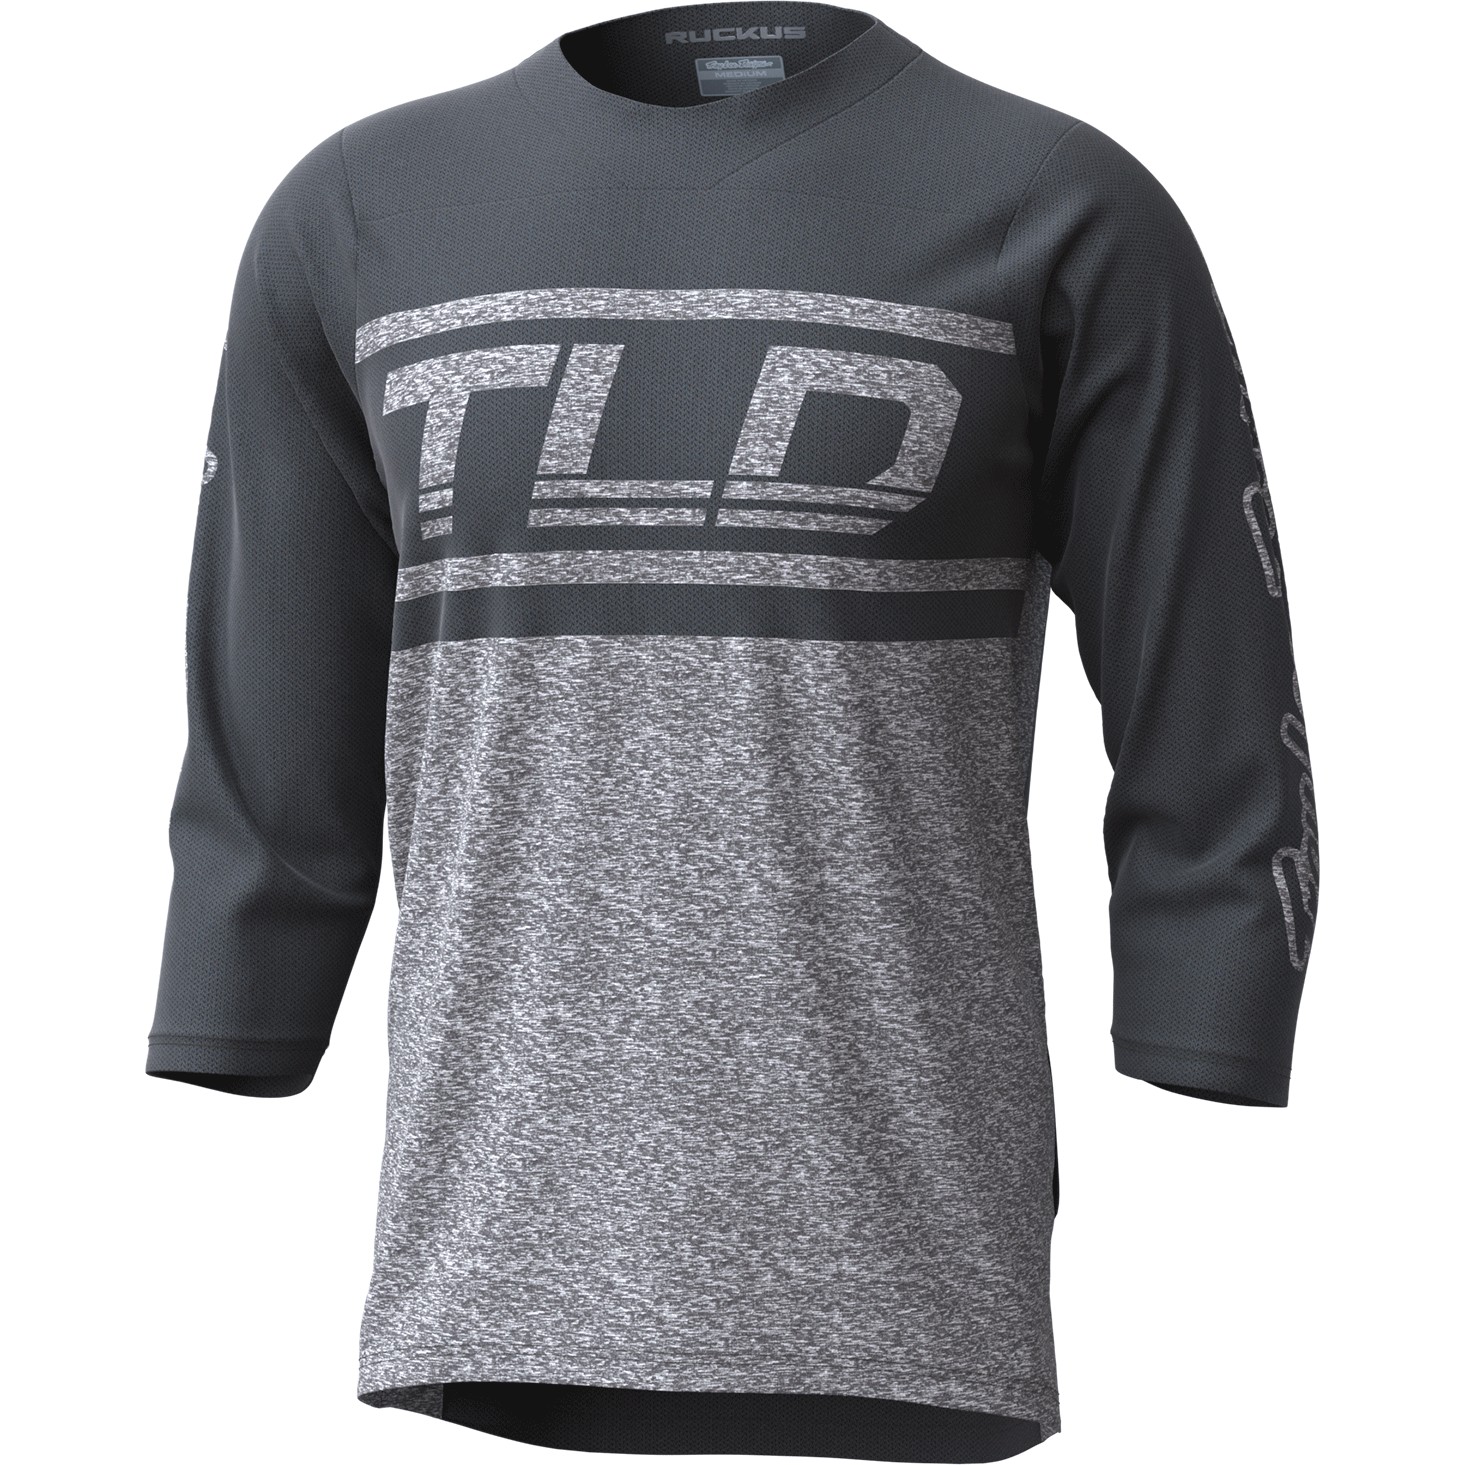 Foto van Troy Lee Designs Ruckus Shirt met 3/4-Mouwen - bars gray / gray heather